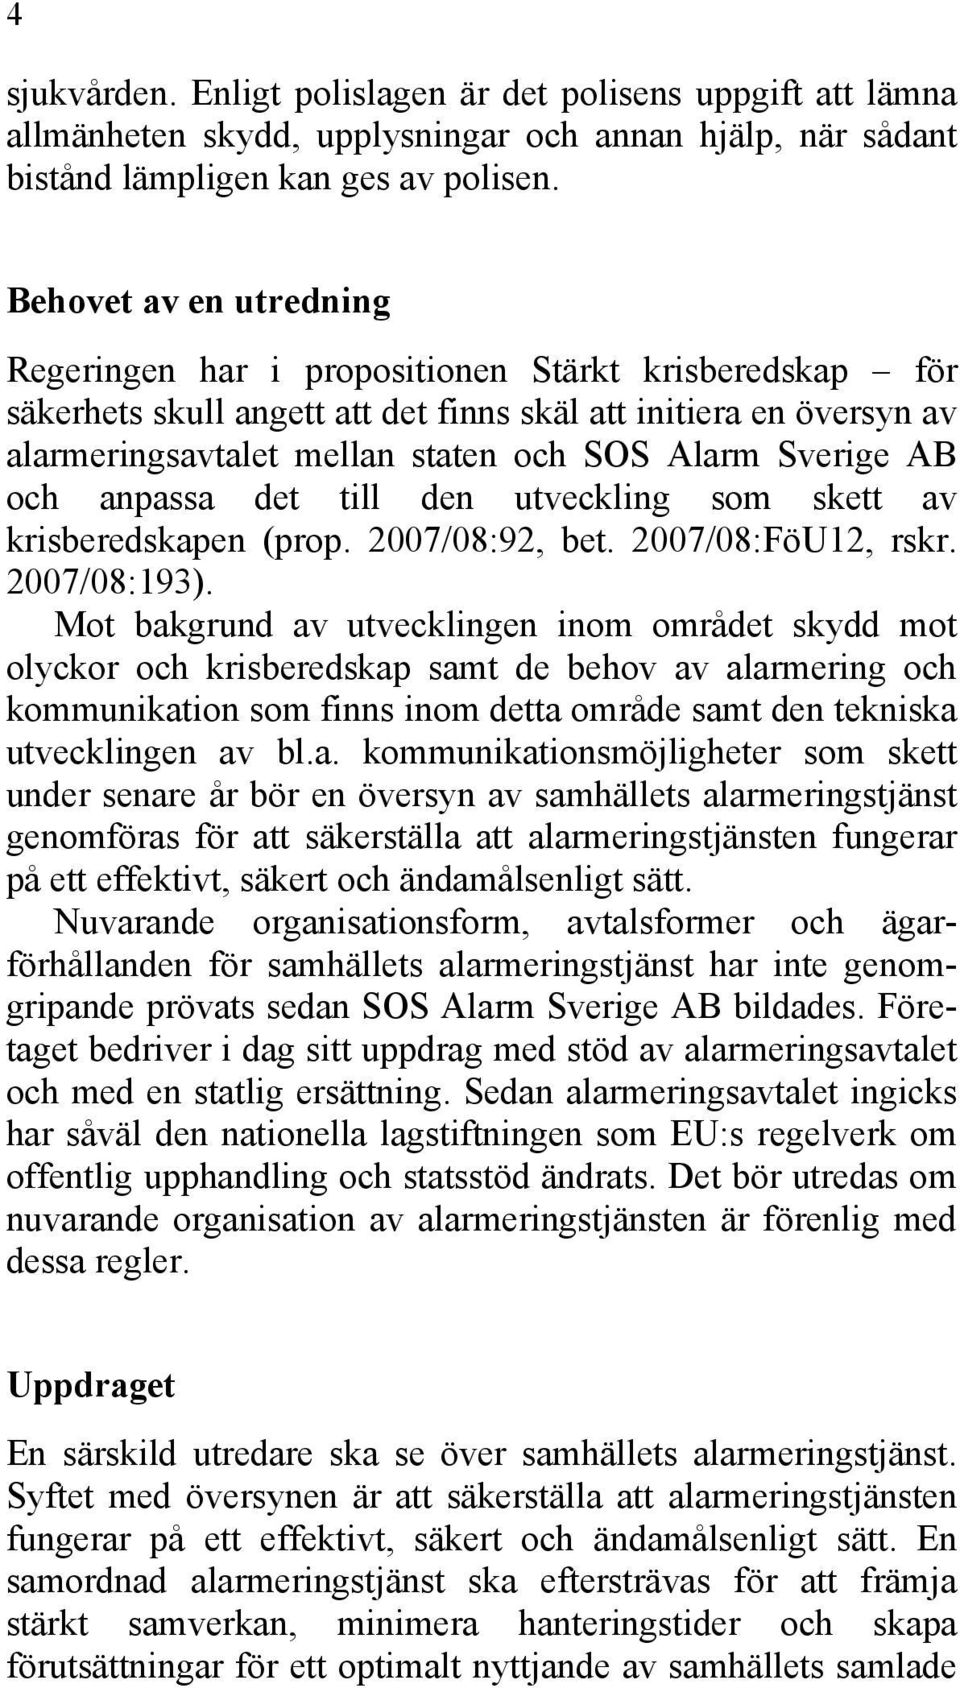 Sverige AB och anpassa det till den utveckling som skett av krisberedskapen (prop. 2007/08:92, bet. 2007/08:FöU12, rskr. 2007/08:193).